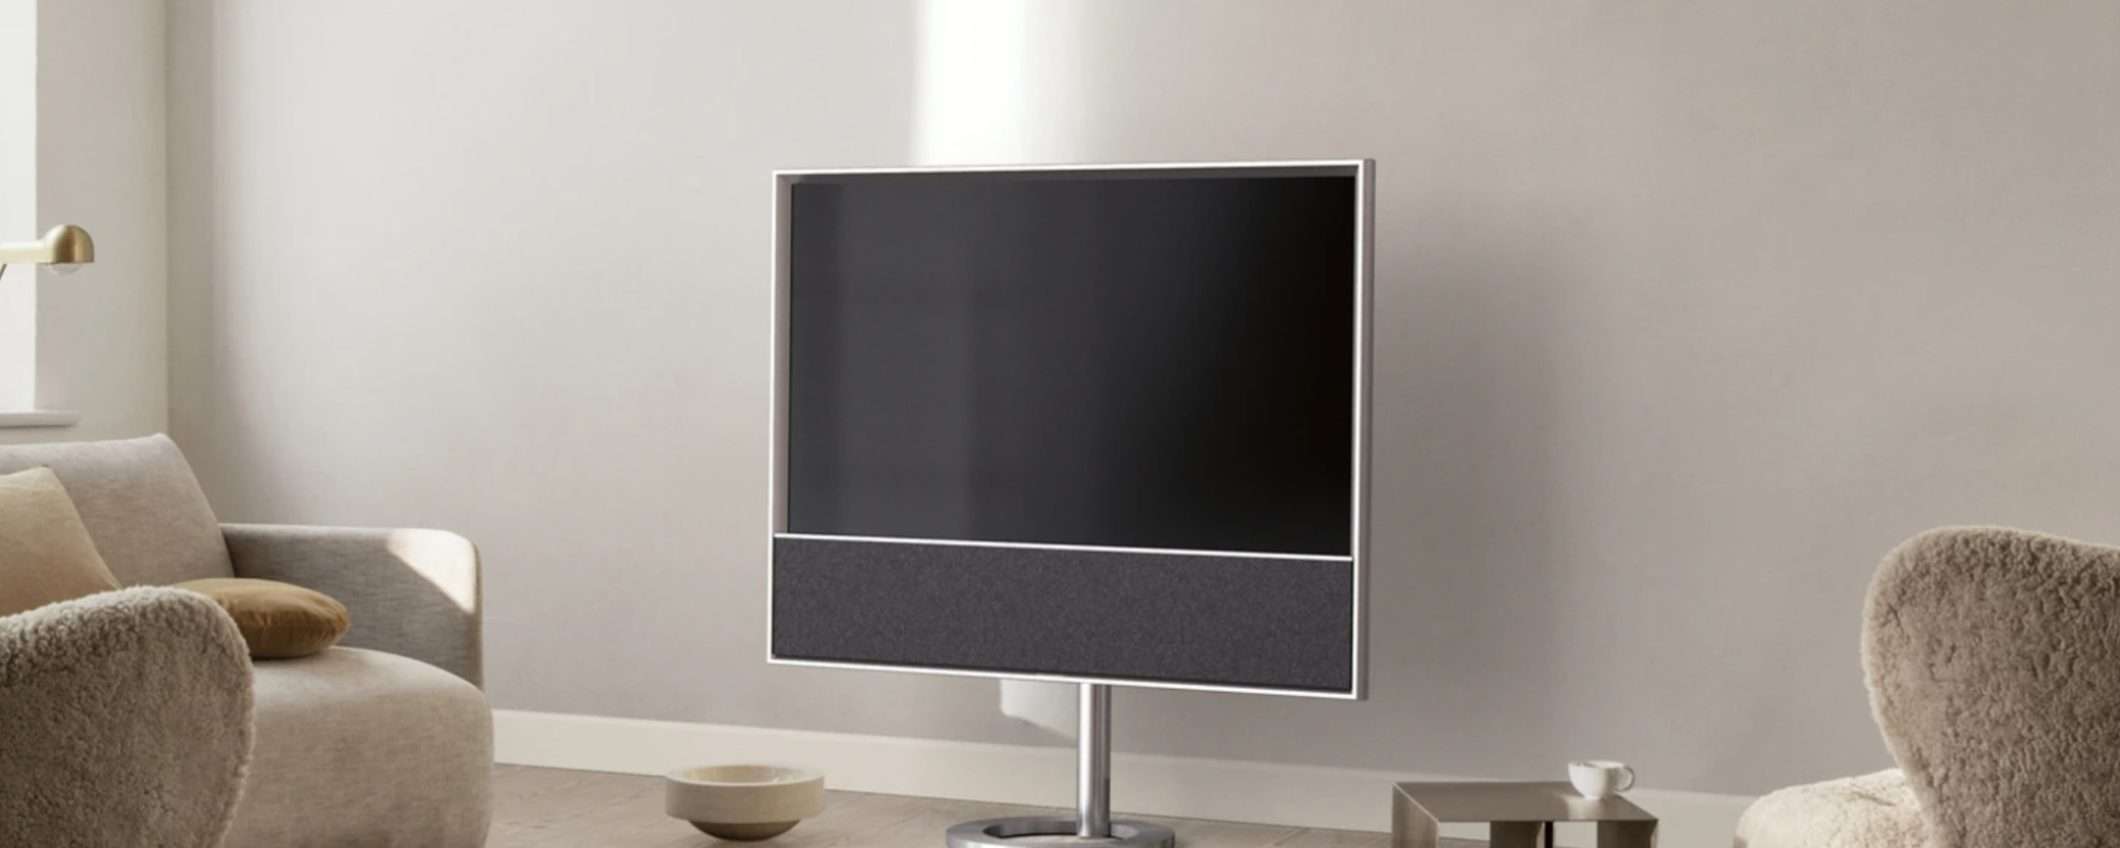 Beovision Contour: il pluripremiato TV dal design senza tempo e suono incredibile (solo per pochi)